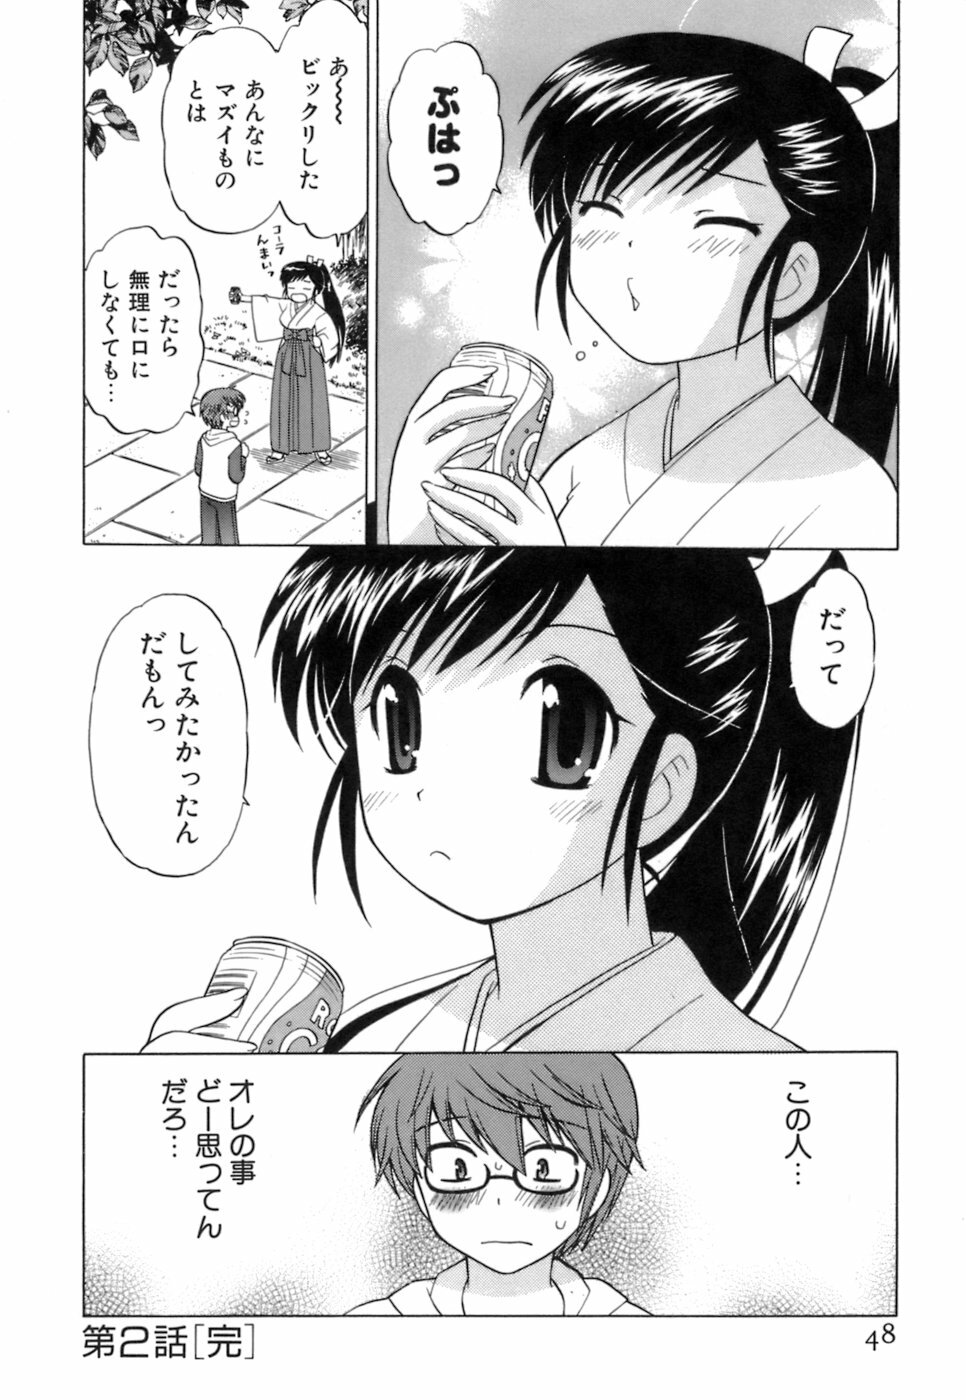 [Kotono Wakako] Miko Moe 1 page 50 full